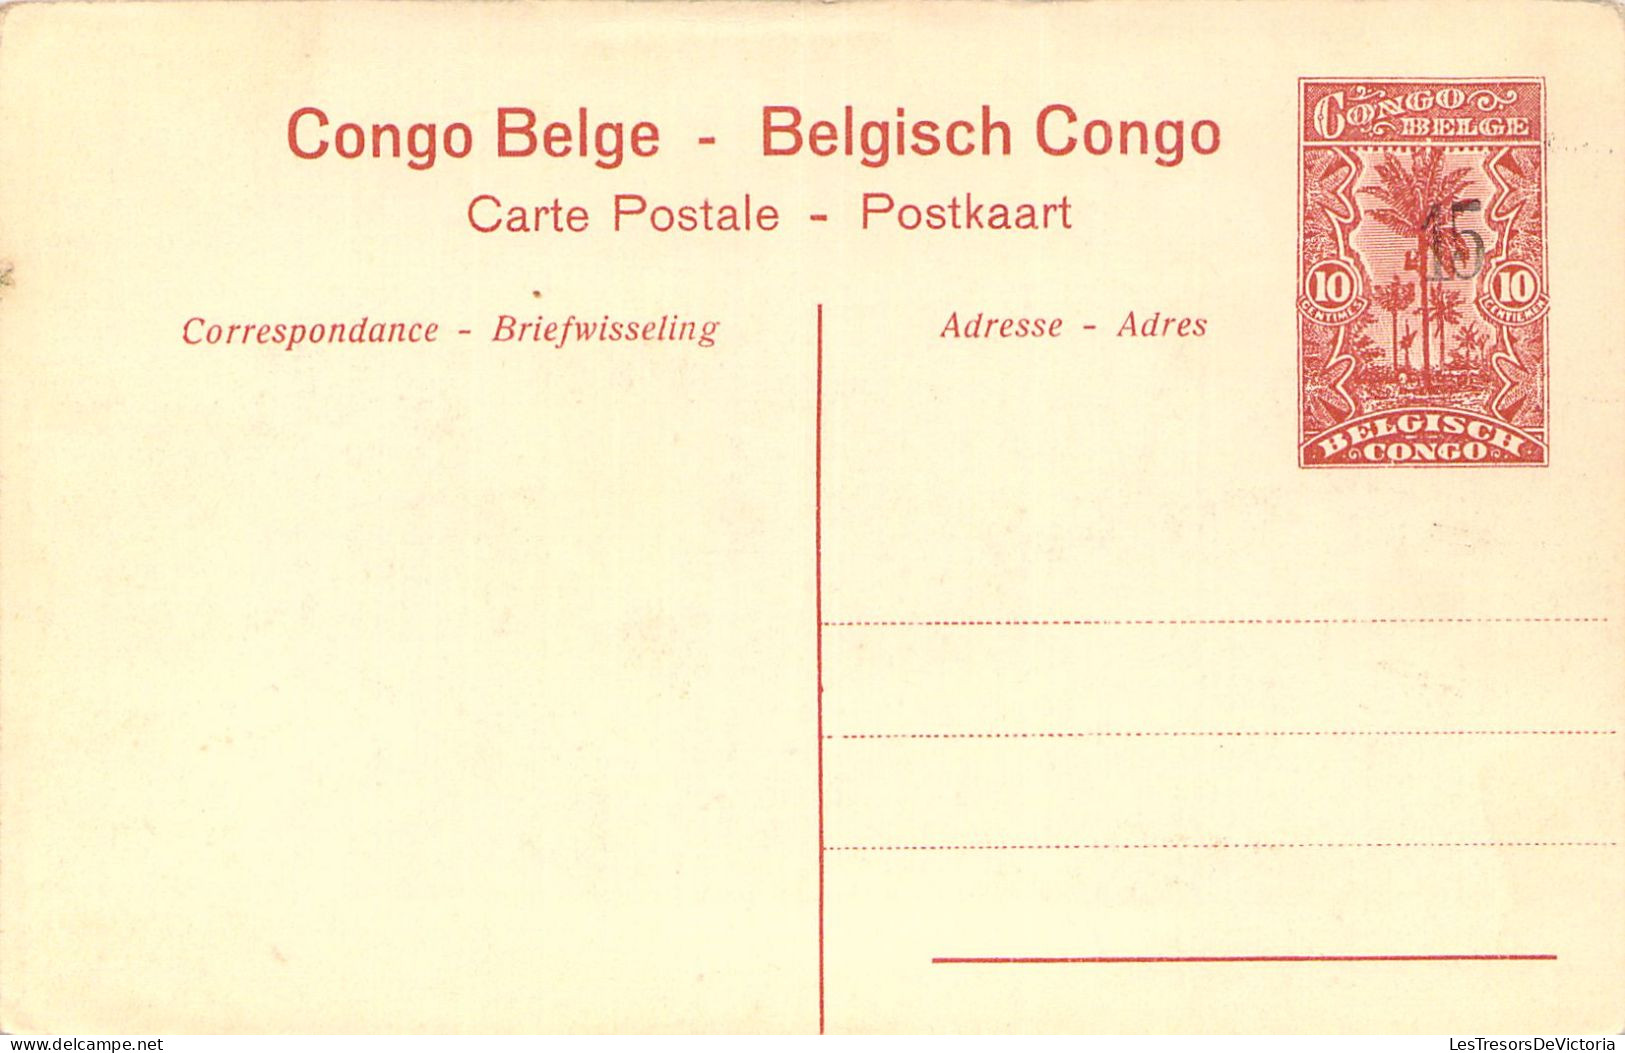 CONGO BELGE - Stanley Falls - Un Village - Carte Postale Ancienne - Congo Belga